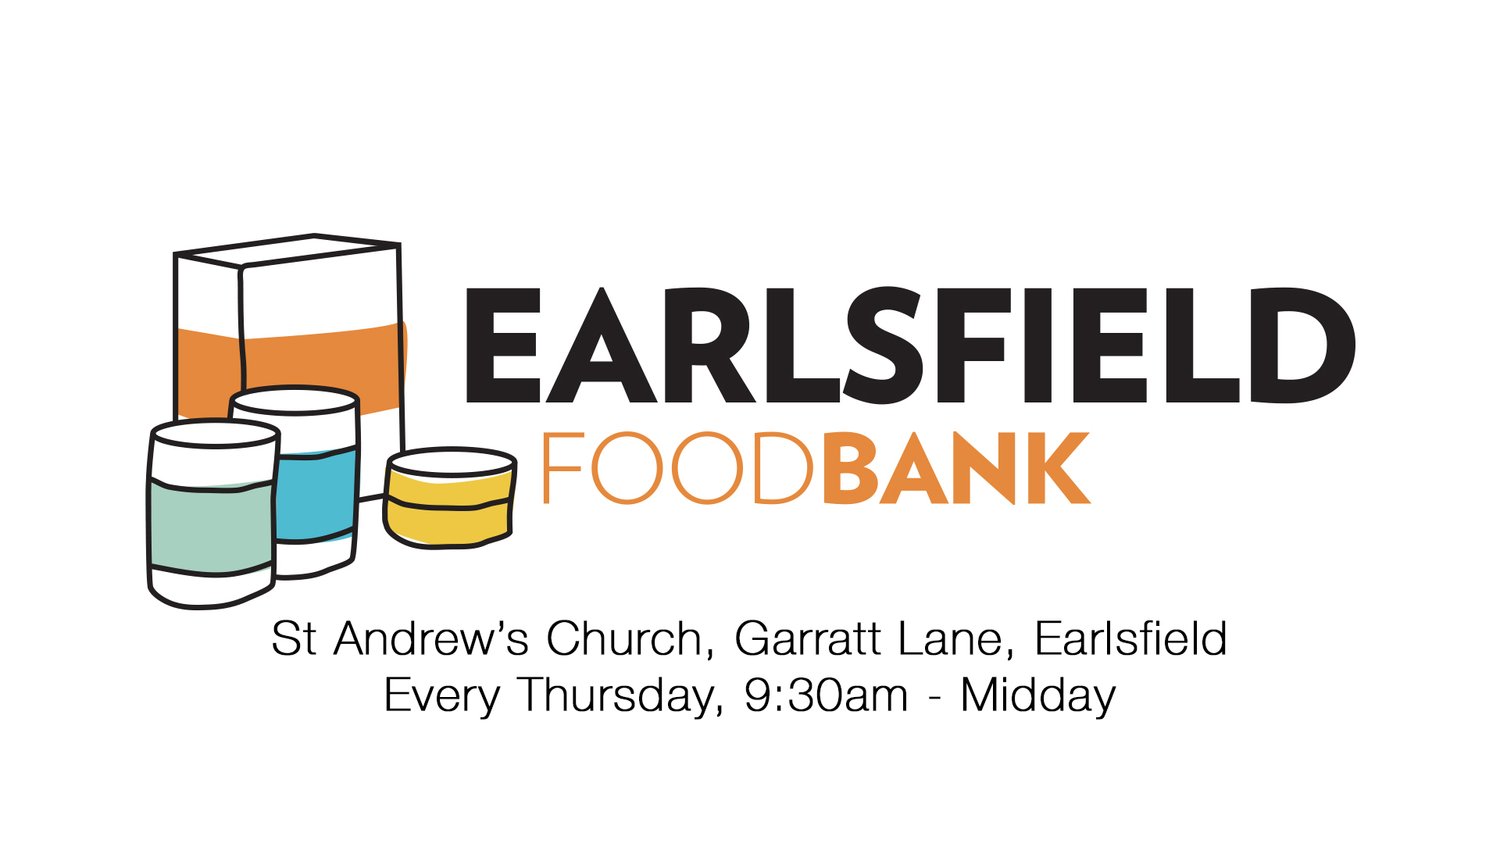 Earlsfield Foodbank